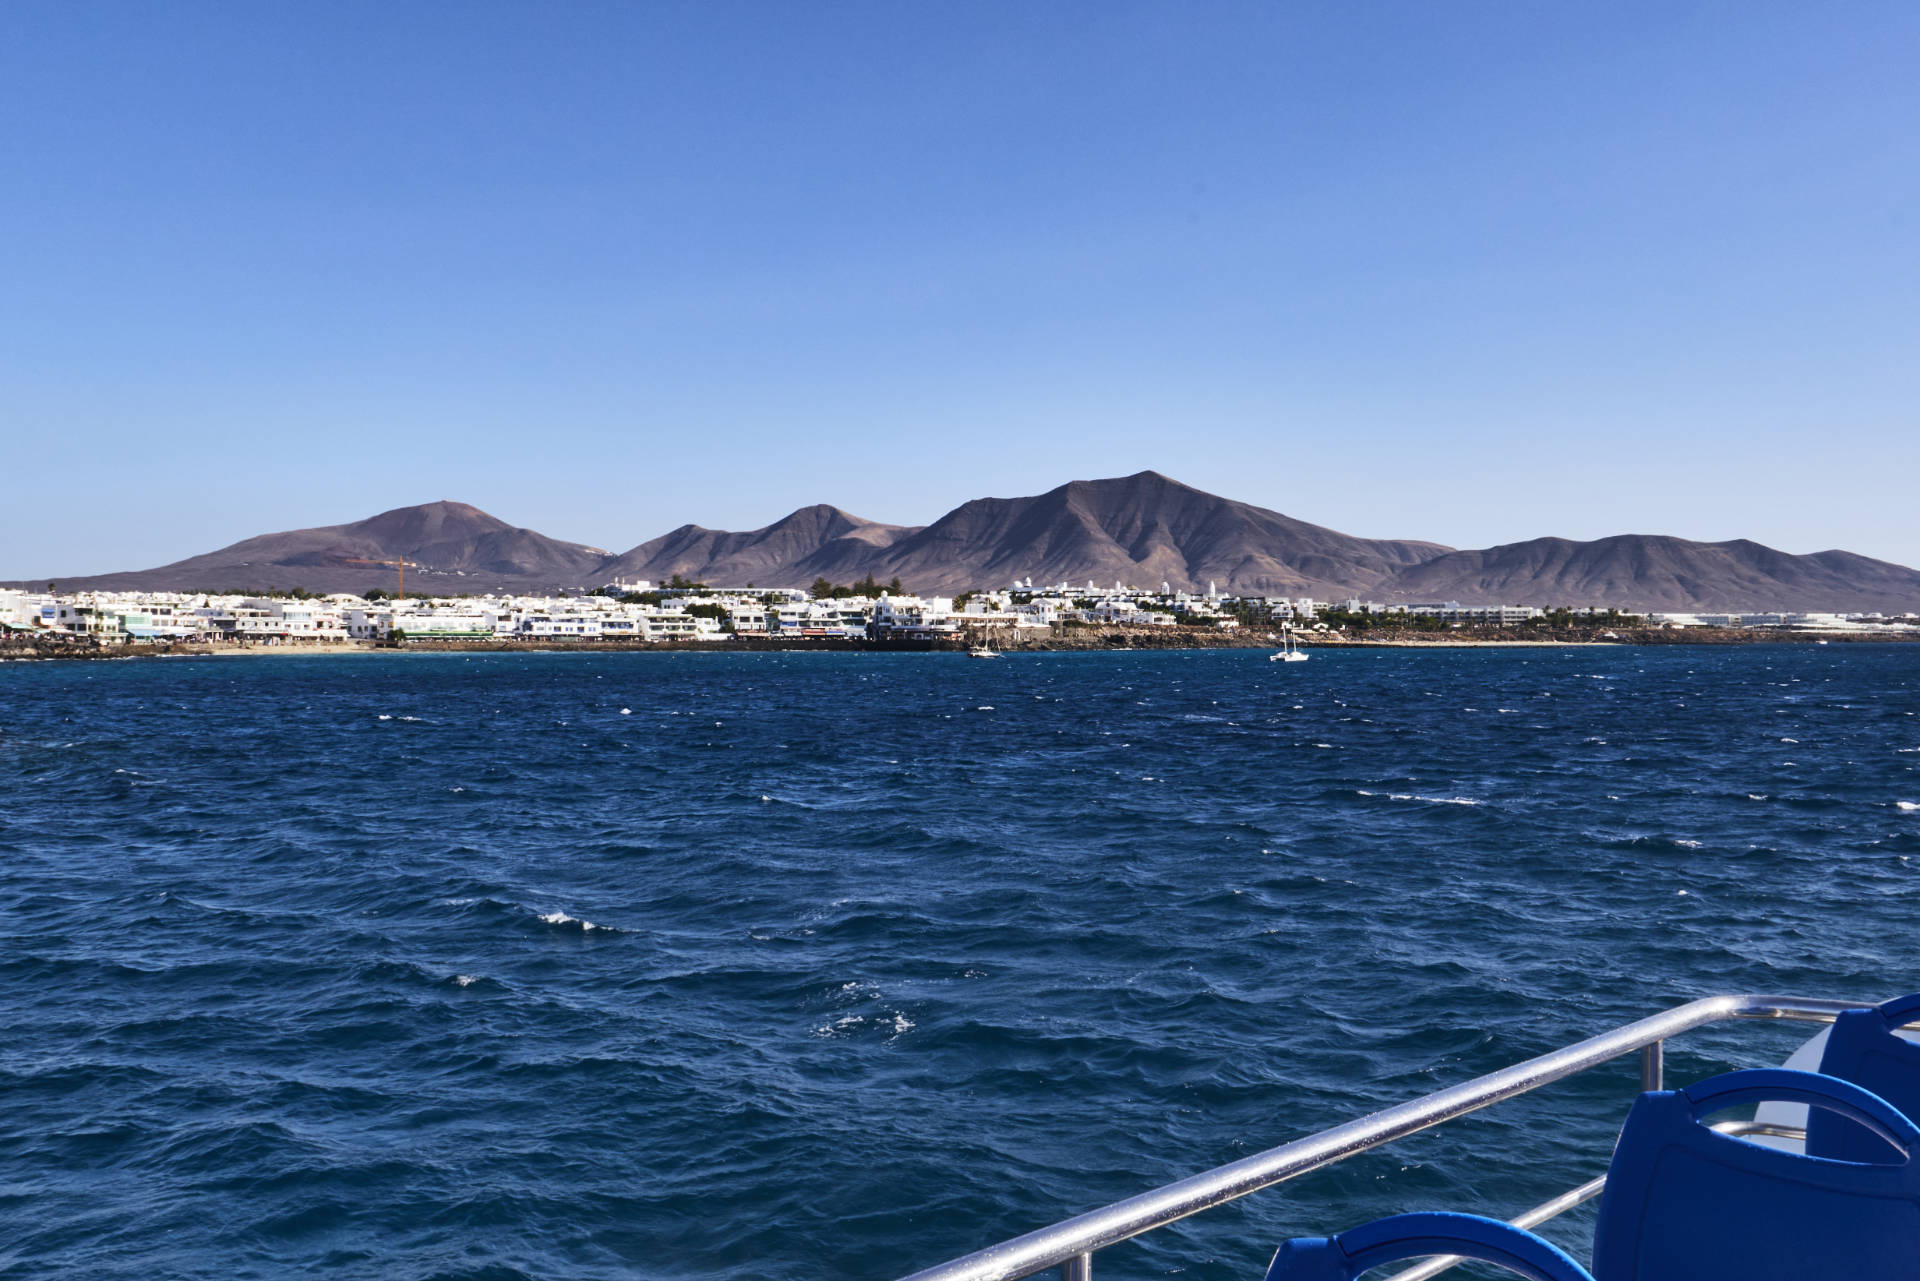 Einlaufen in den Hafen Playa Blanca auf Lanzarote – in der Ferne baut sich die Bergkette des Monumento Natural Los Ajaches.